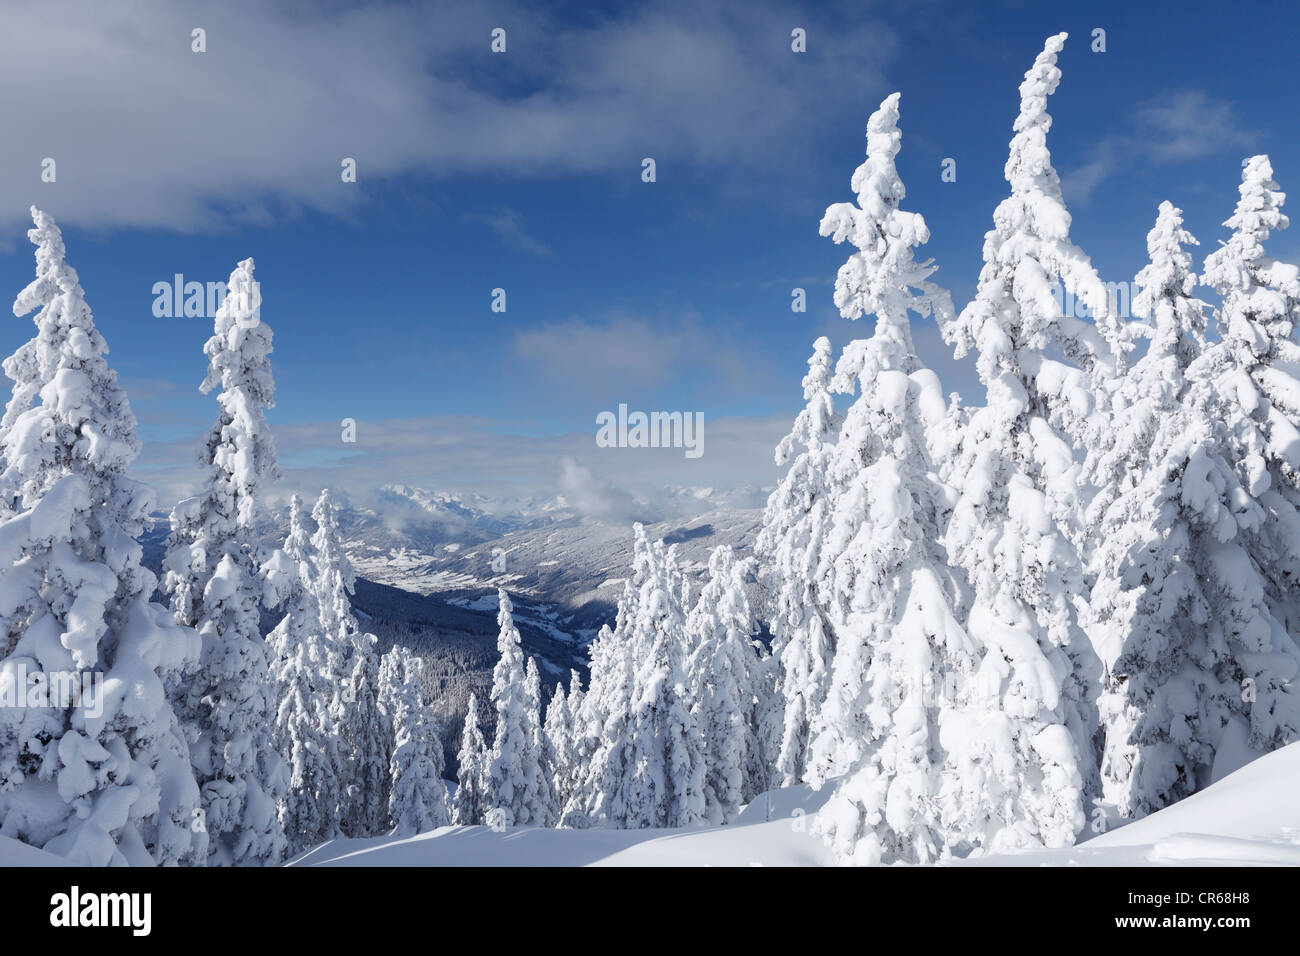 Austria, Salzburgo County, vista de los abetos cubiertos de nieve en la montaña Foto de stock